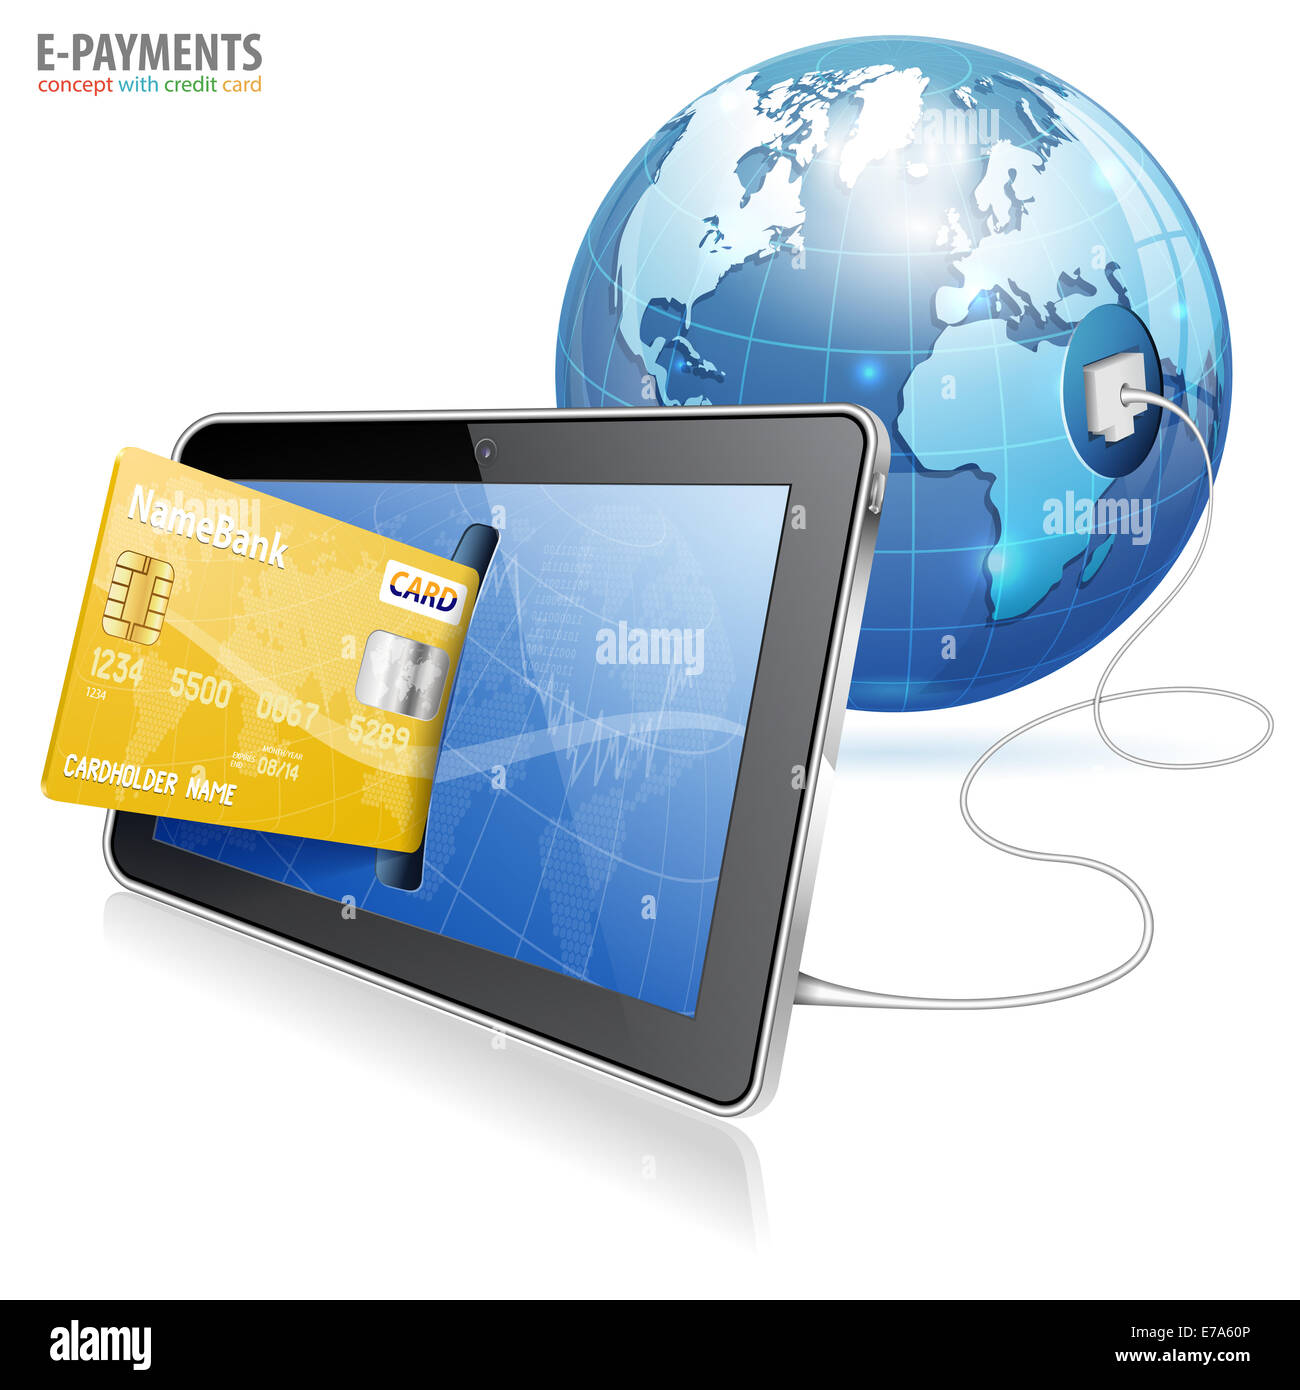 Concept de paiement électronique - Tablet PC avec carte de crédit et de la terre, isolé sur fond blanc Banque D'Images